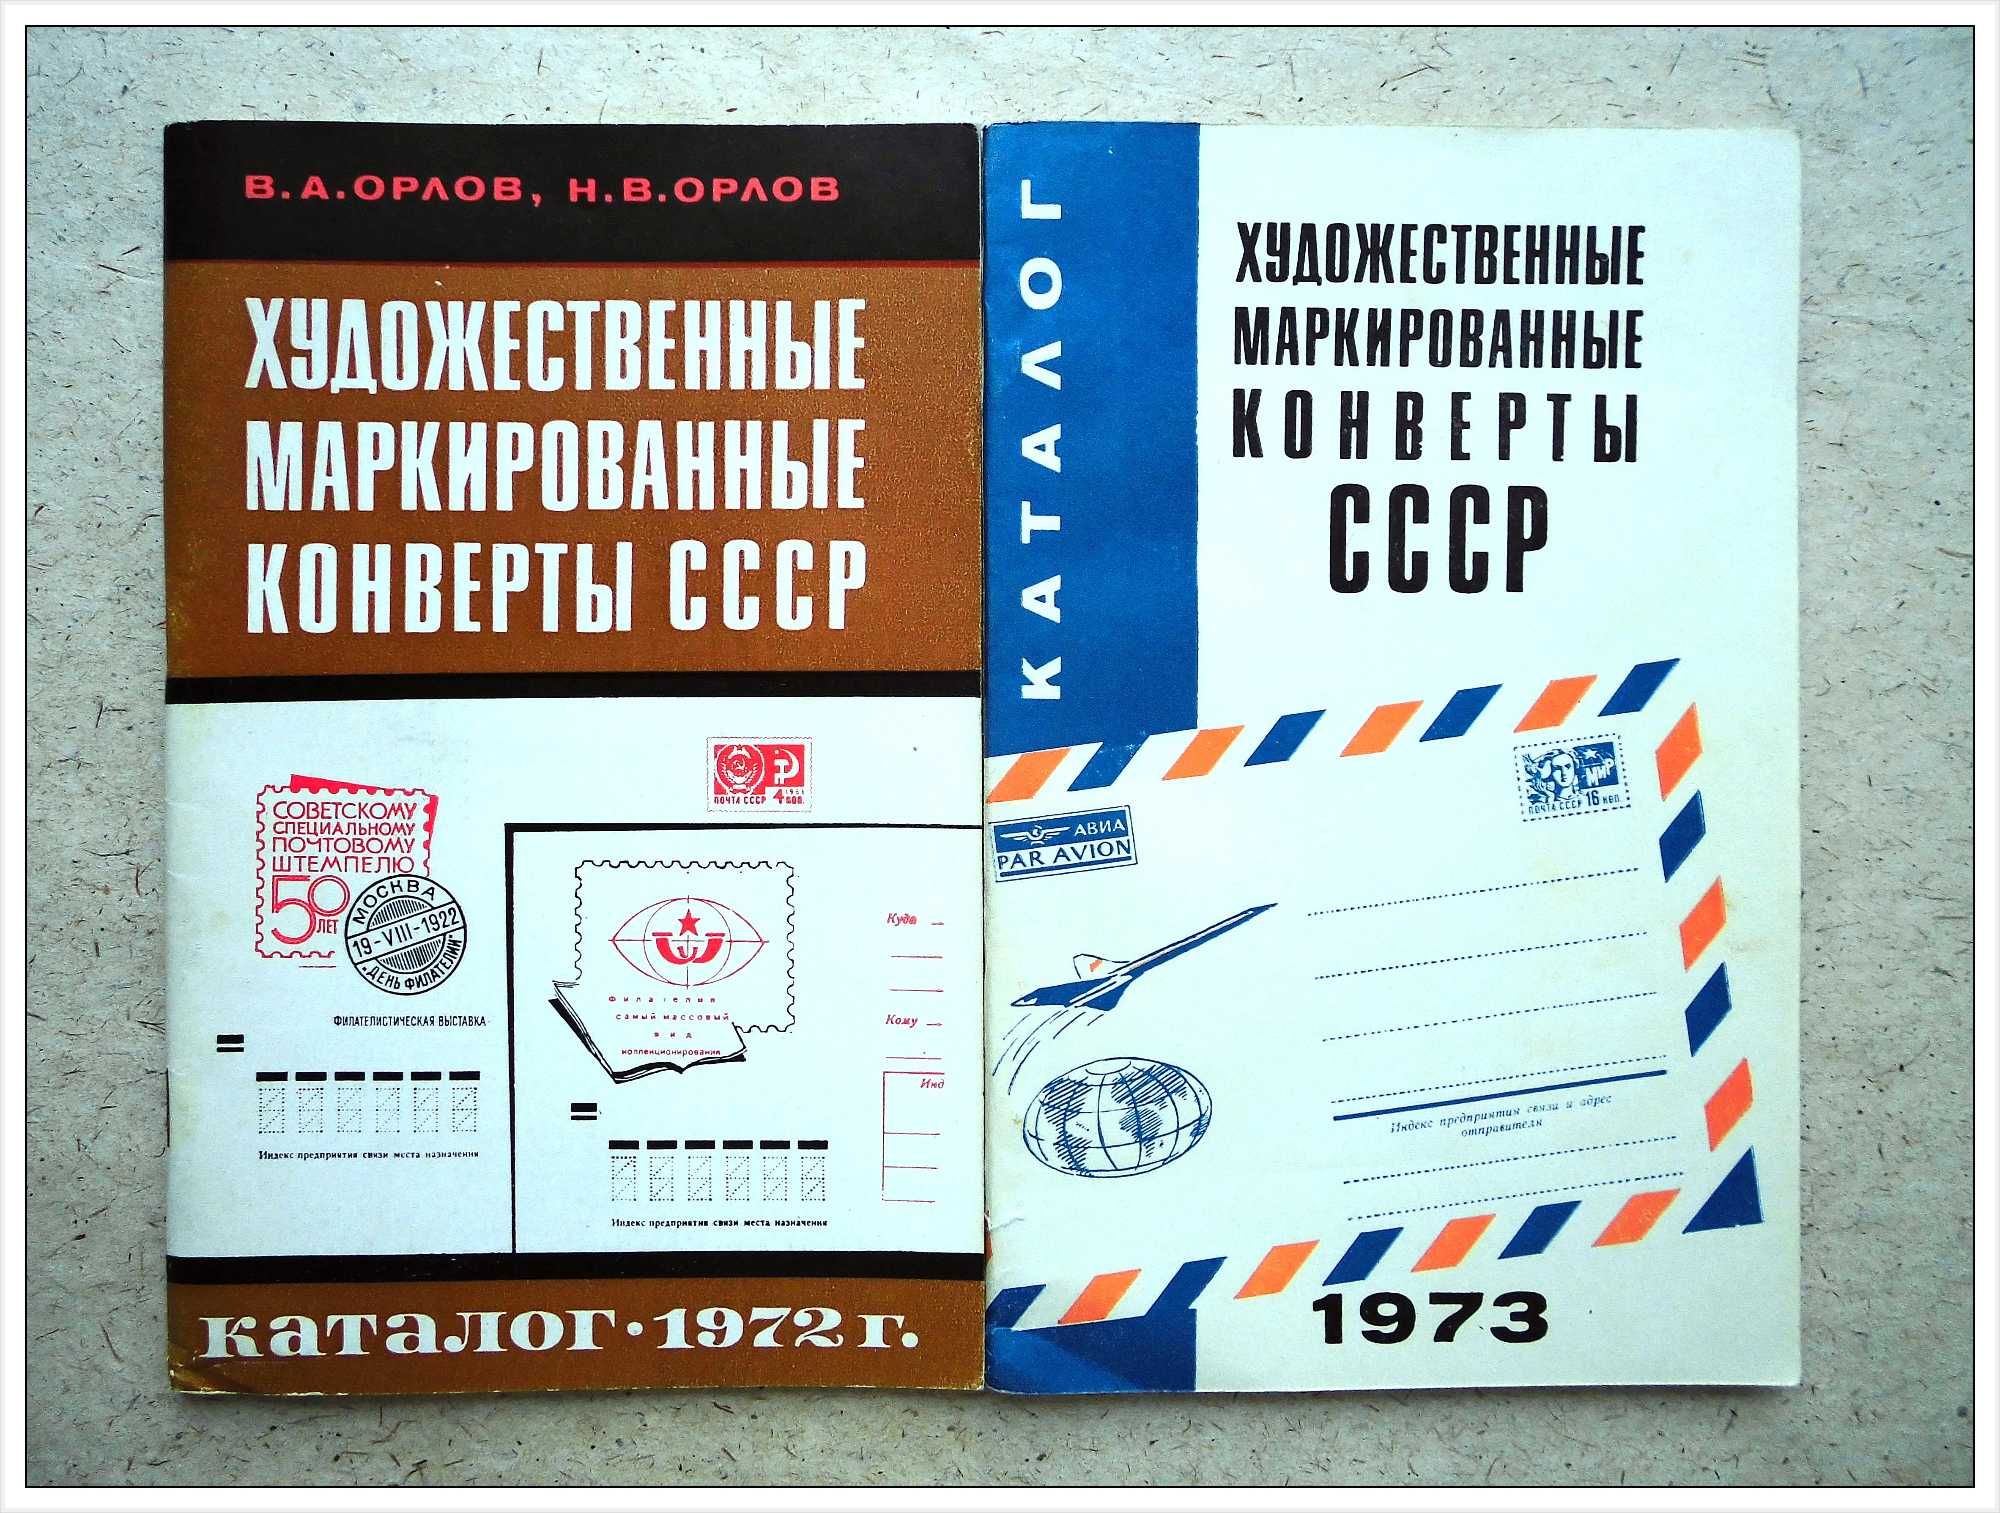 Каталог 1972г. / 1973г. Художественные маркированные конверты СССР